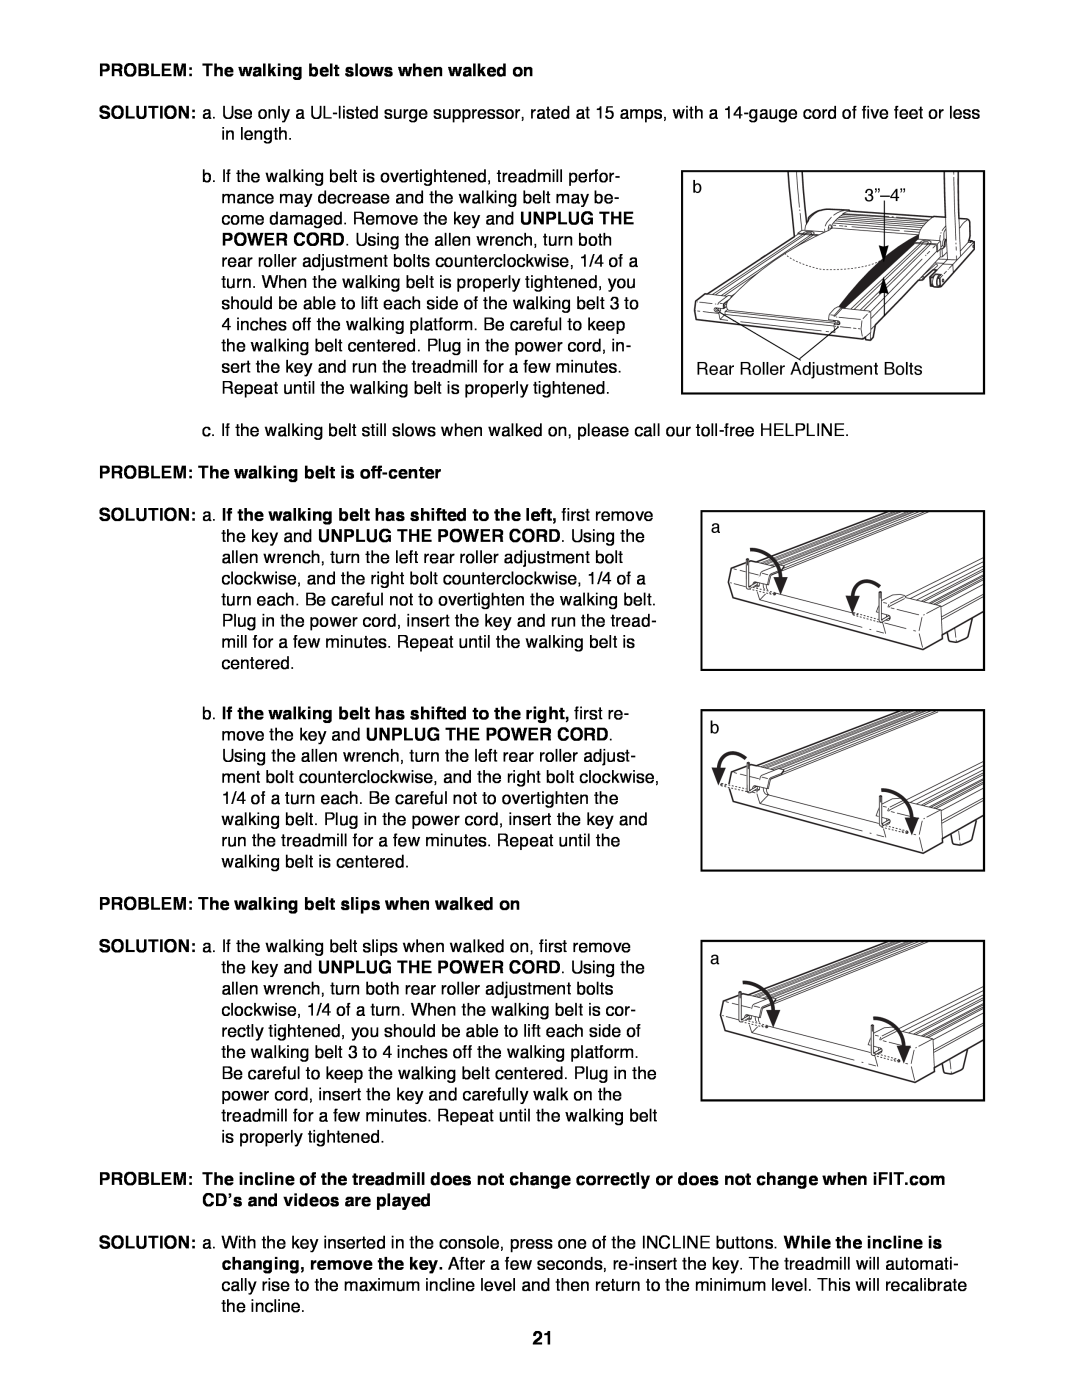 ProForm 831.299460 user manual PROBLEM The walking belt slows when walked on, PROBLEM The walking belt is off-center 